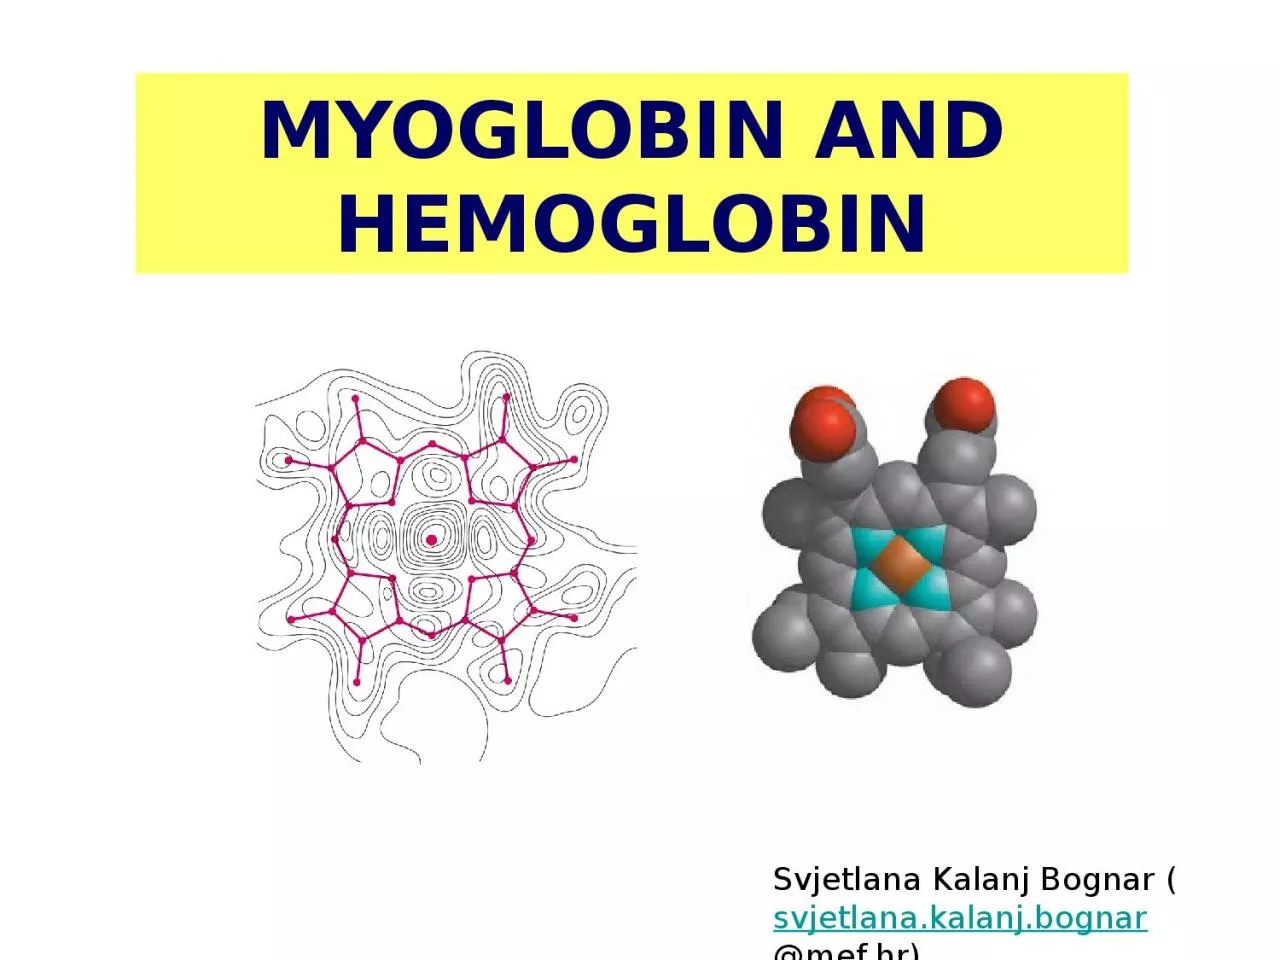 MYOGLOBIN AND HEMOGLOBIN